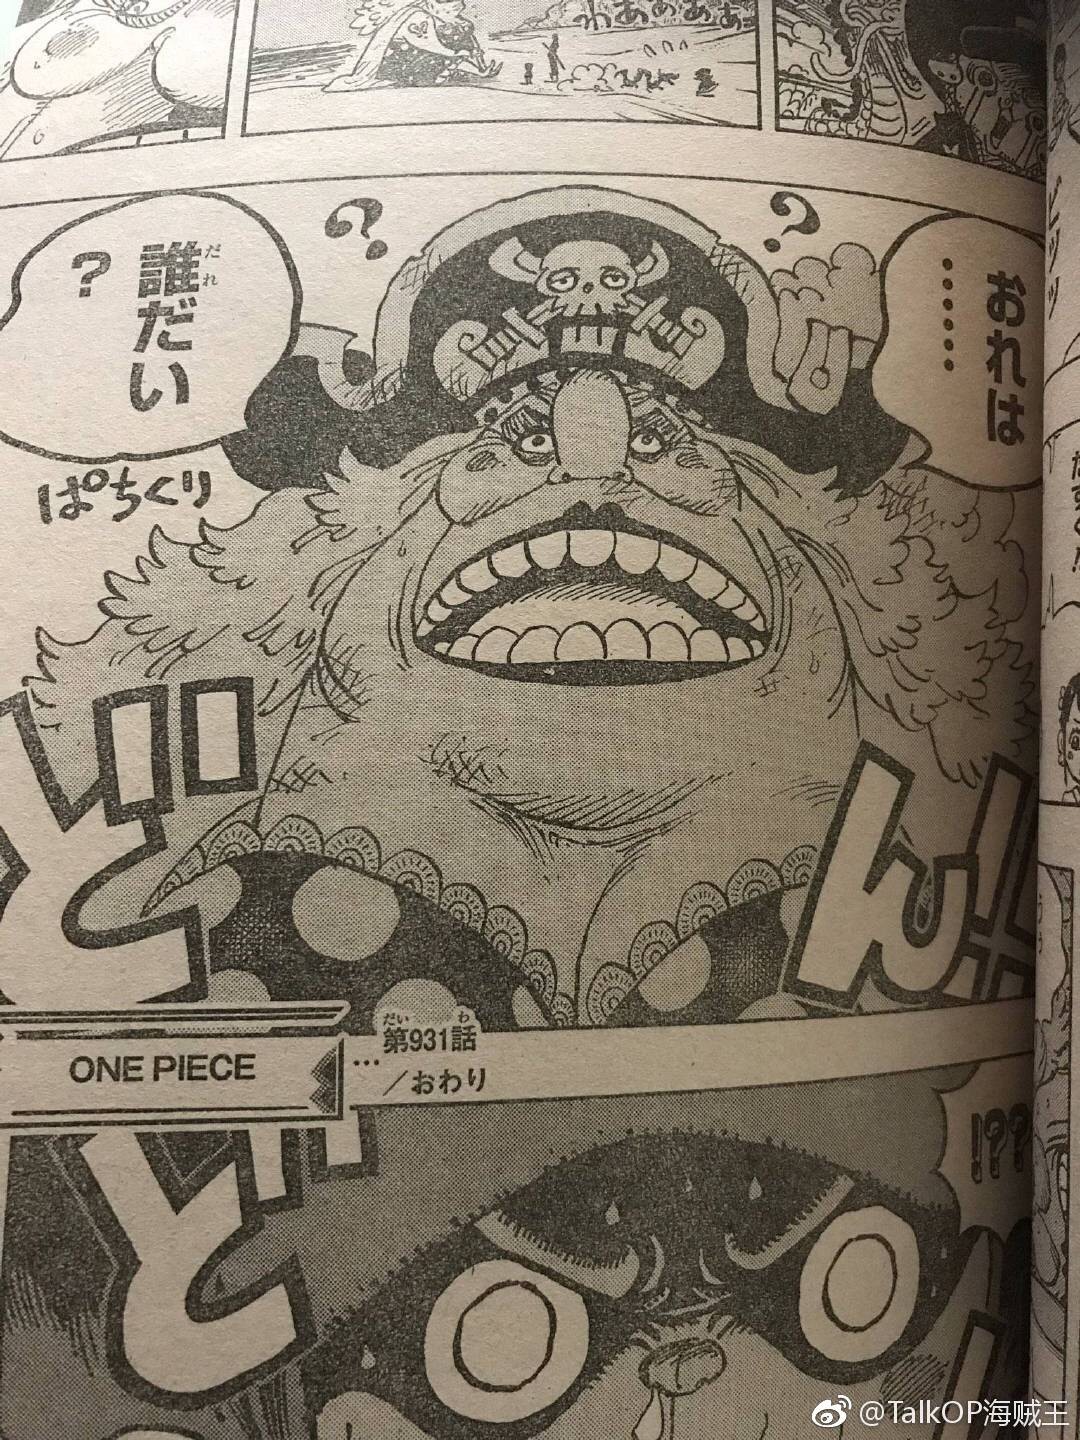 One Piece 931 Raw